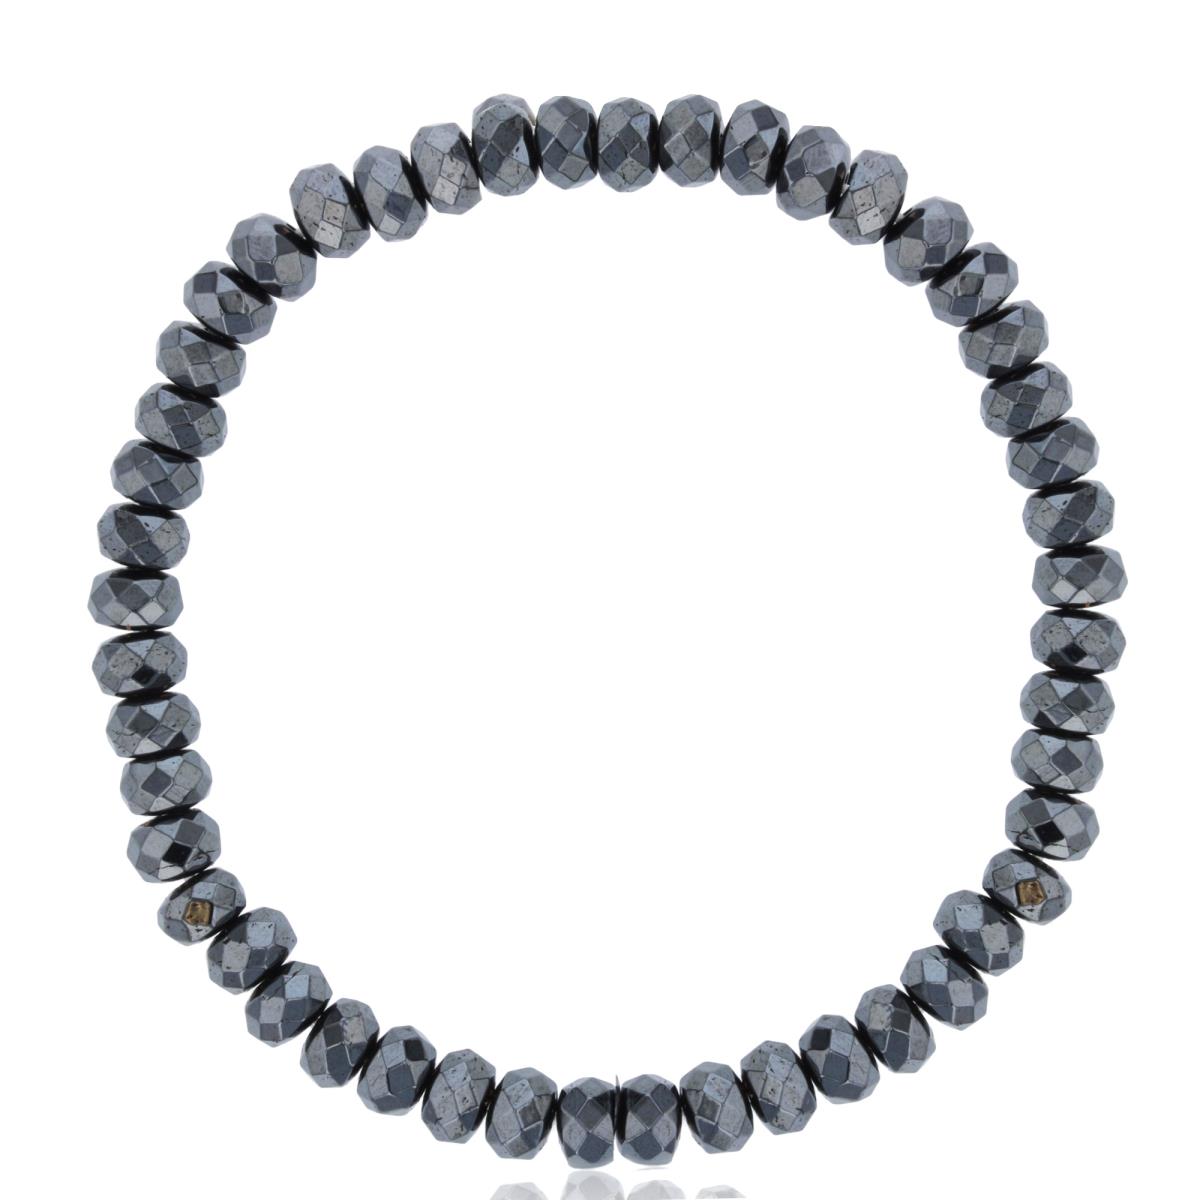 4x6mm Hematite Beads Stretch Bracelet